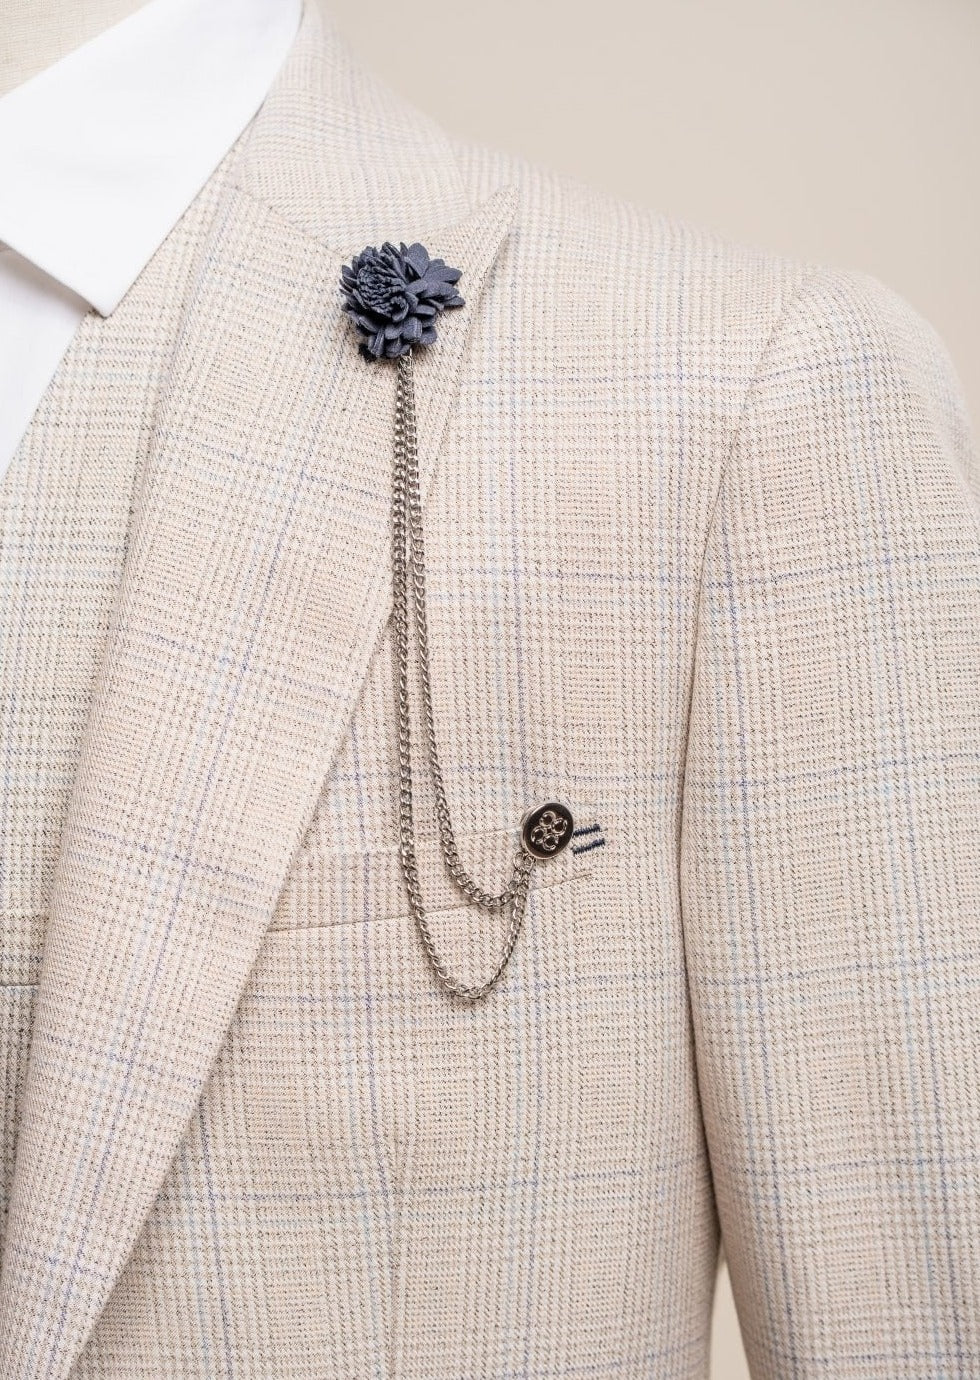 Mens Navy Flower Lapel Pin & Chain | Menz Suits – Menz Suits